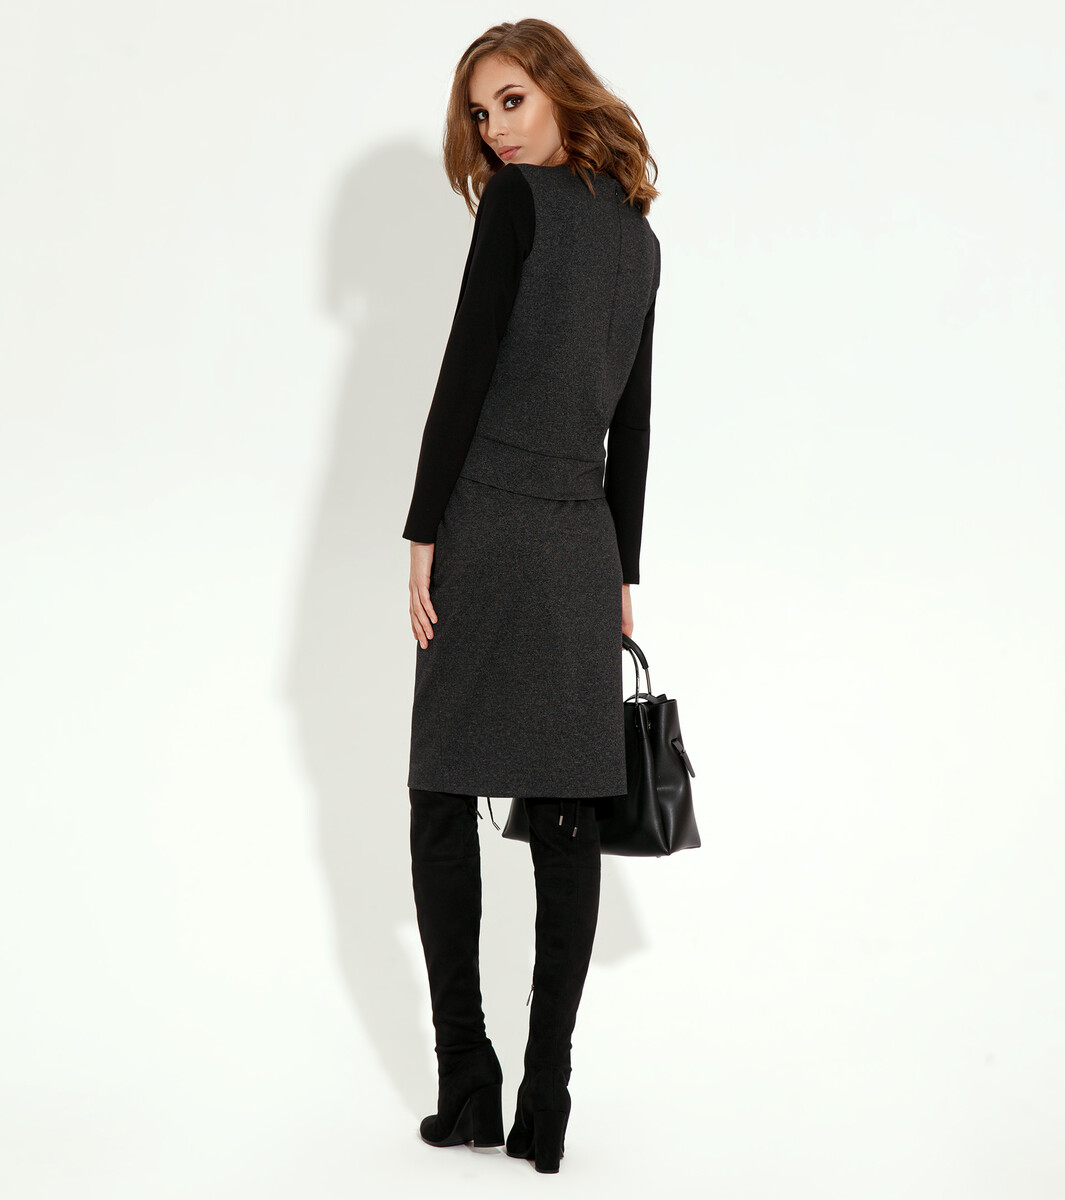 Комплект женский (джемпер, юбка) PANDA, размер 42, цвет темно-серый 01122063 - фото 2